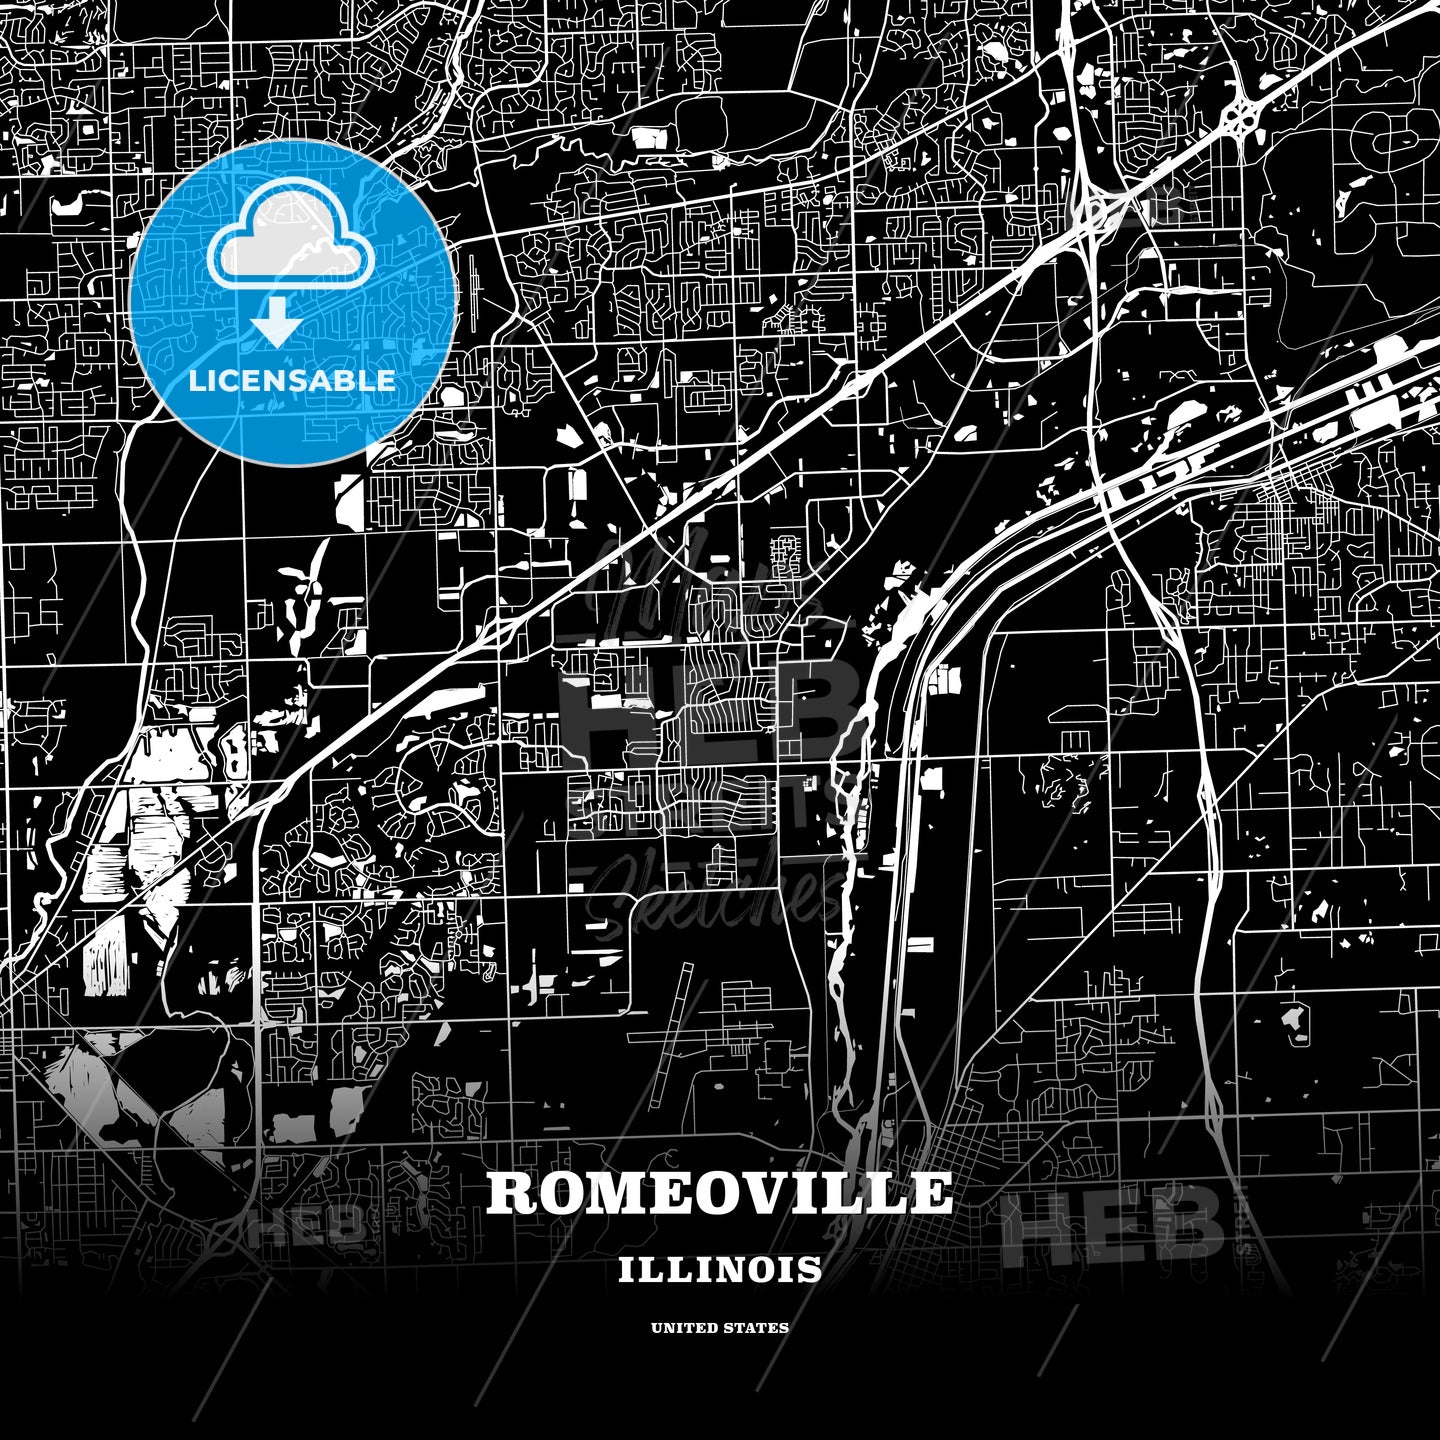 Romeoville, Illinois, USA map